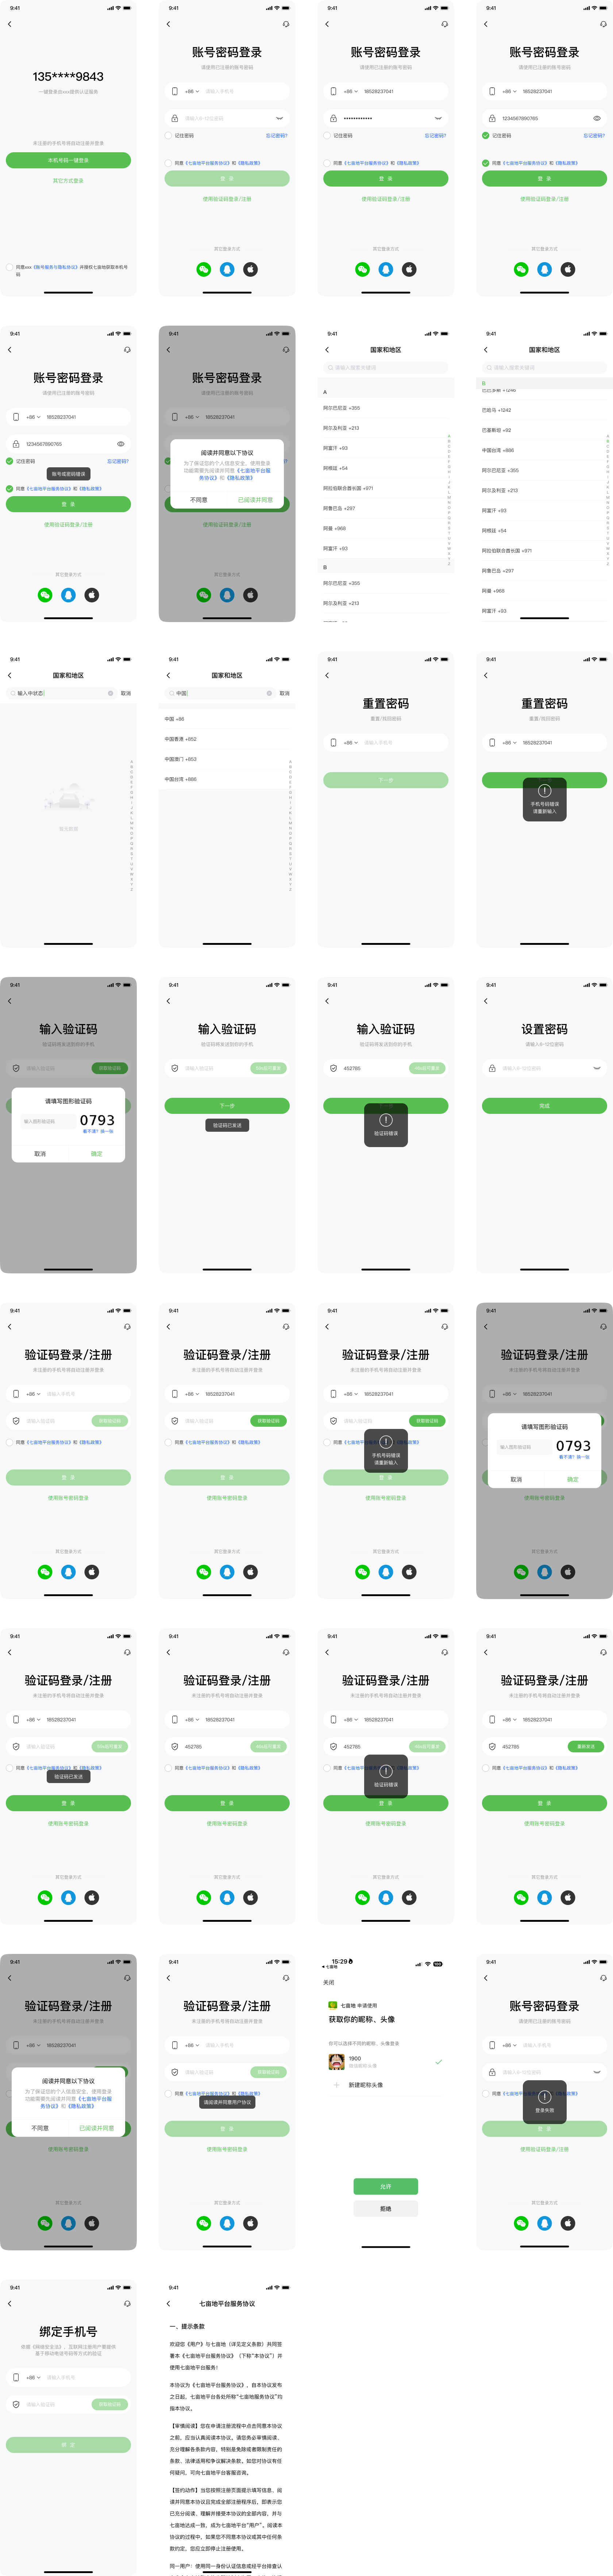 中文app 登录注册页面figma素材下载插图1